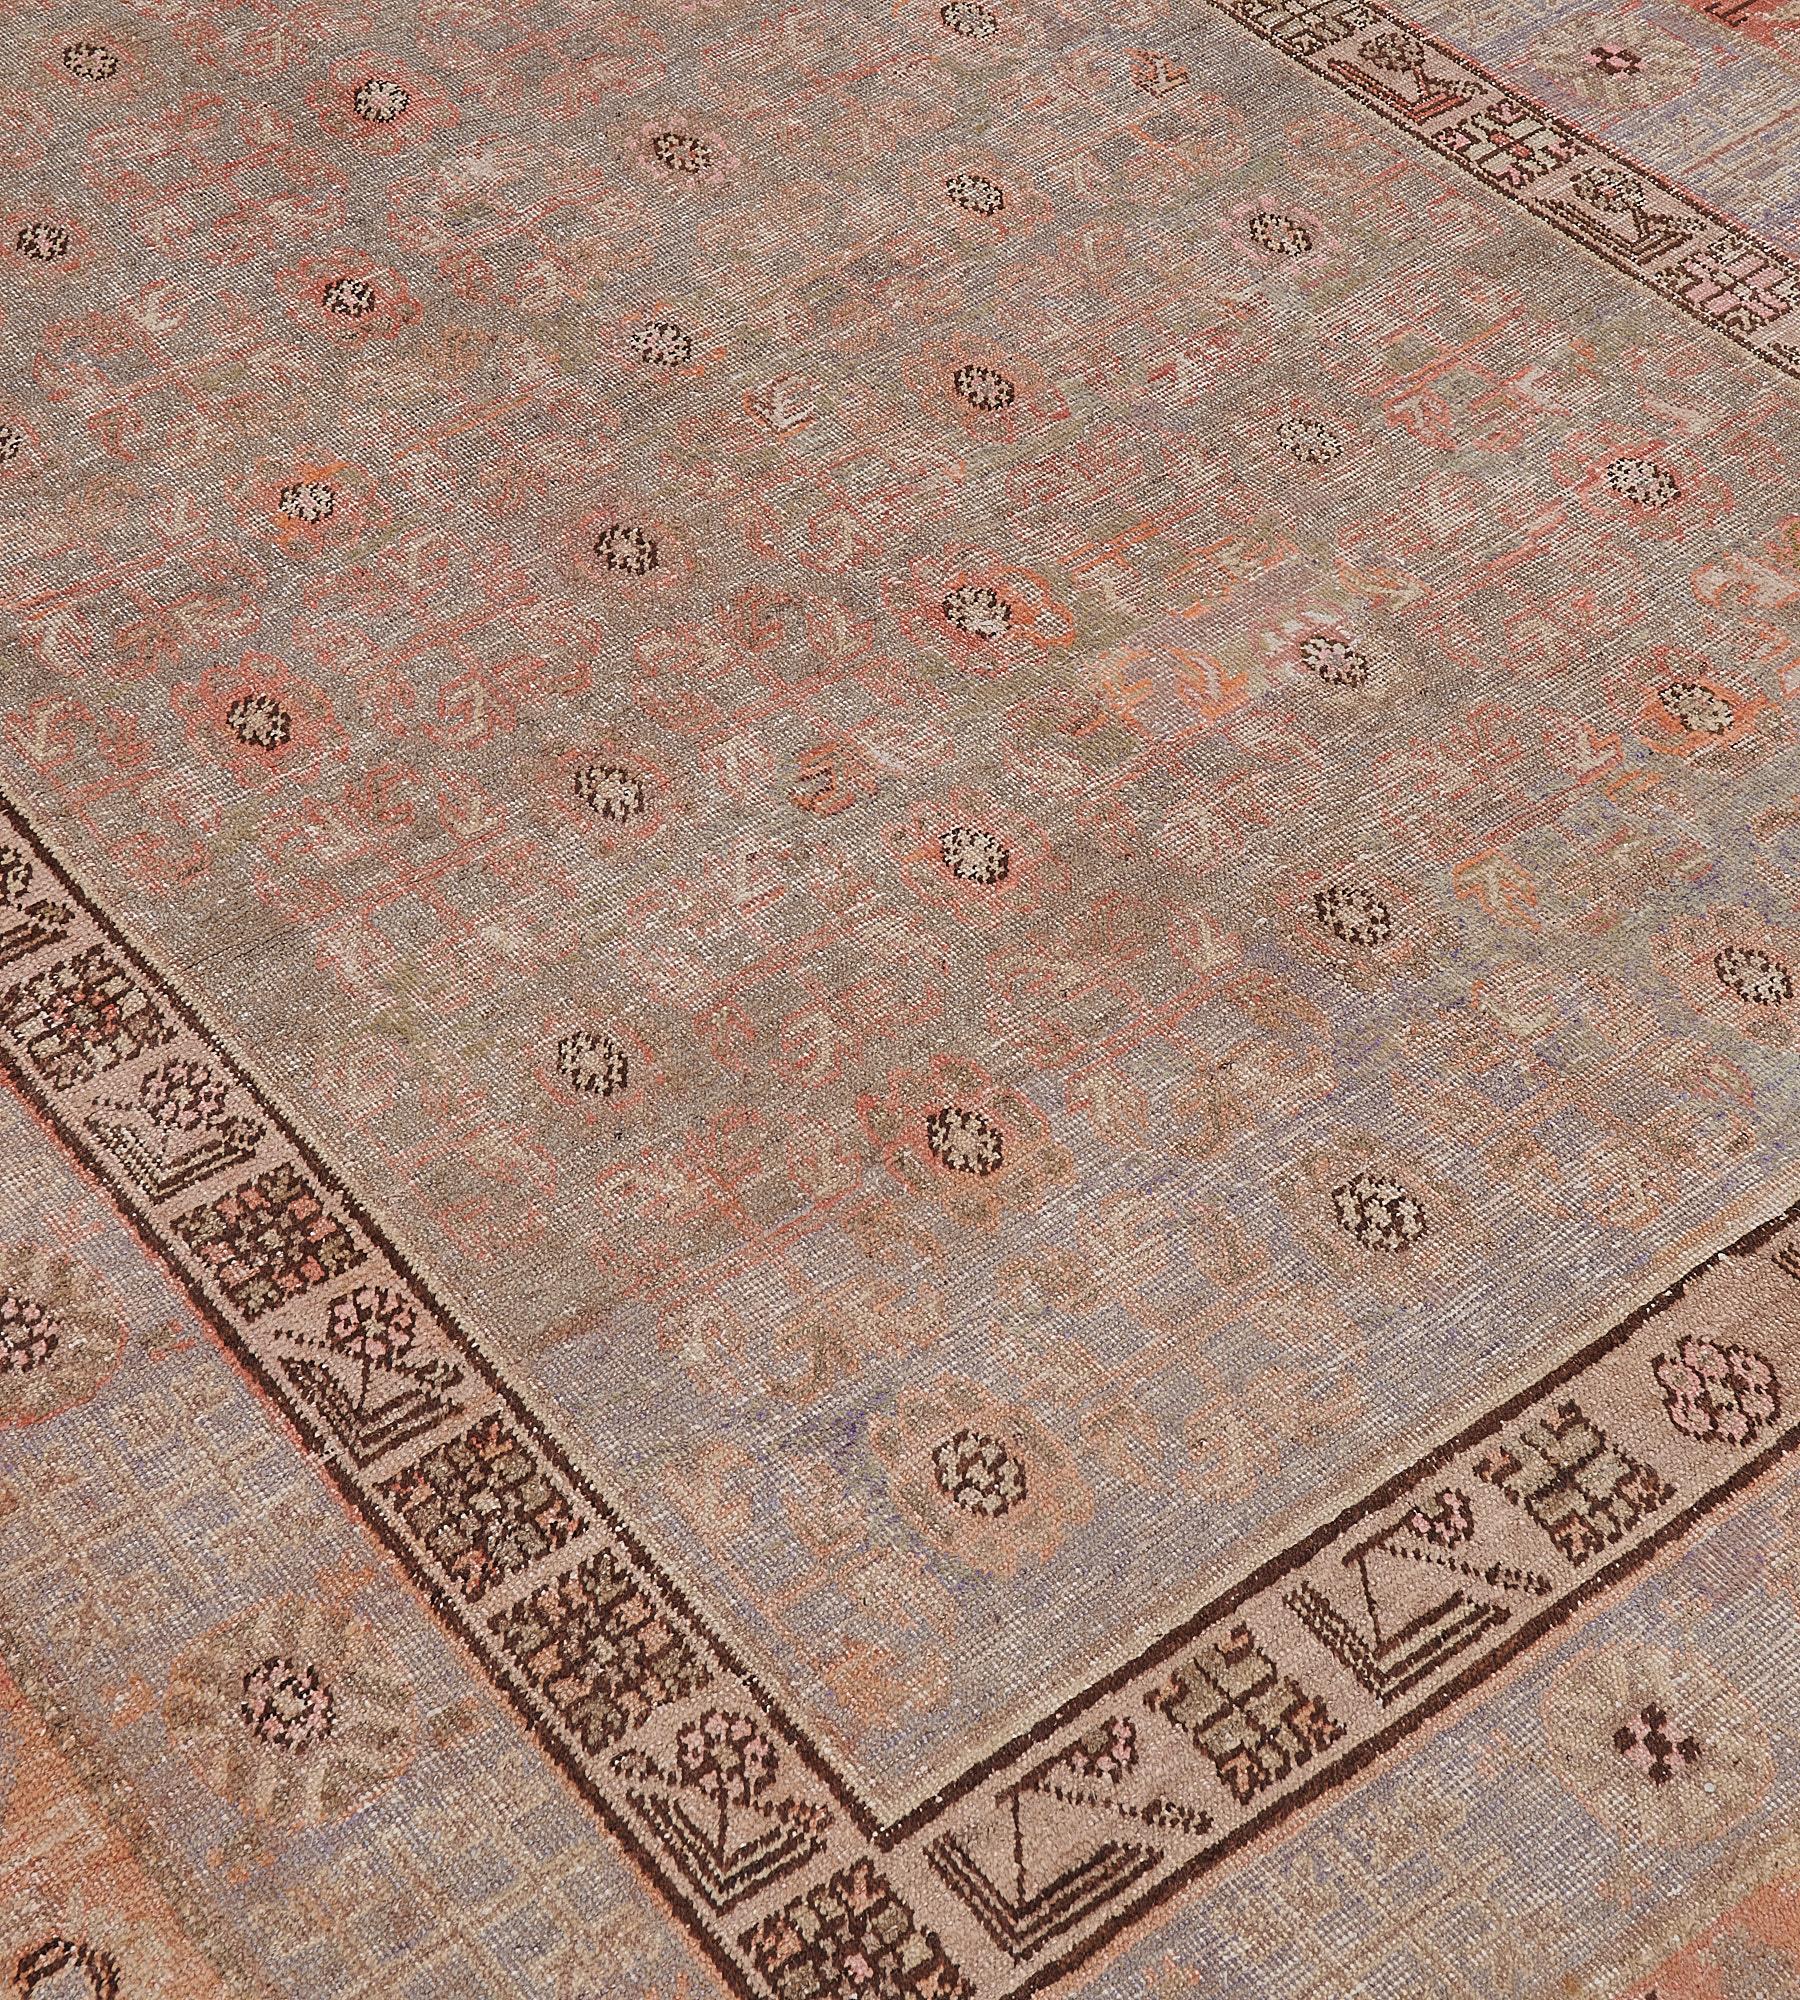 Ce tapis Khotan ancien, vers 1880, a un champ gris pâle avec un motif général de losanges abricot et brun taupe doux et de grands panneaux ouverts à losanges crochetés, dans une bordure gris pâle de palmettes brun taupe alternant avec des motifs